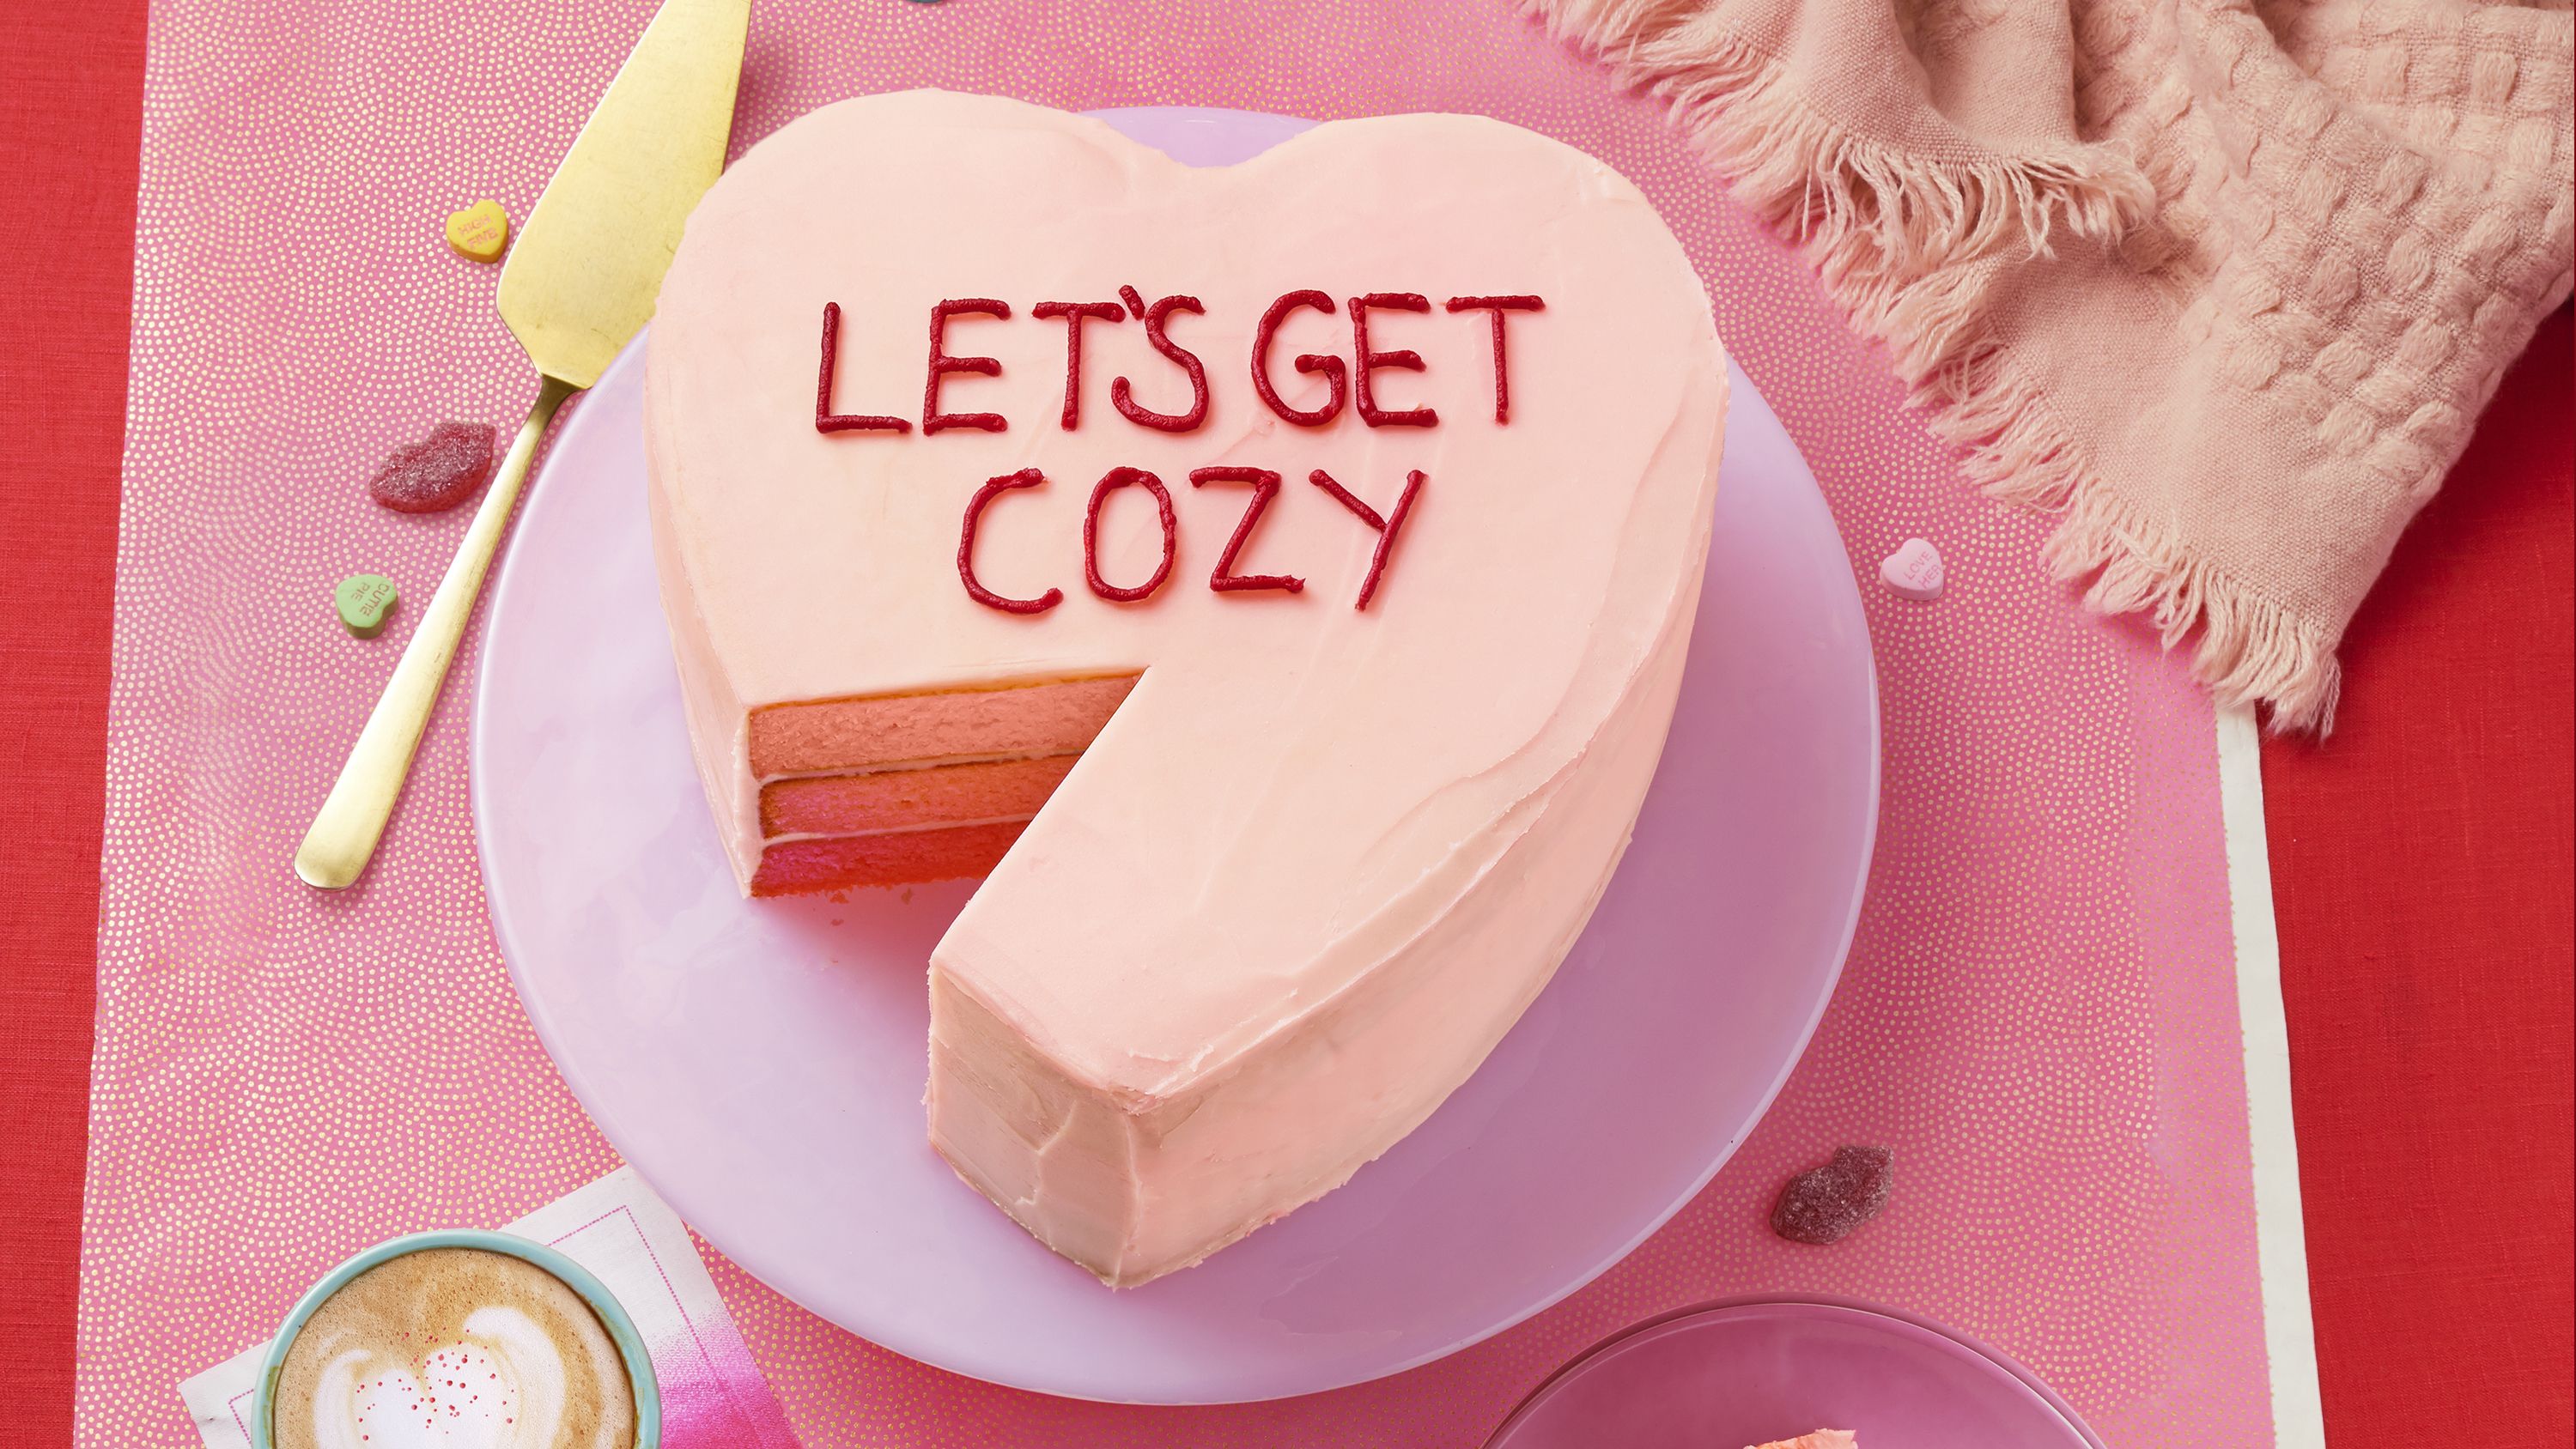 49 Best Valentine's Day Cake Recipes - Easy V-Day Cake Ideas